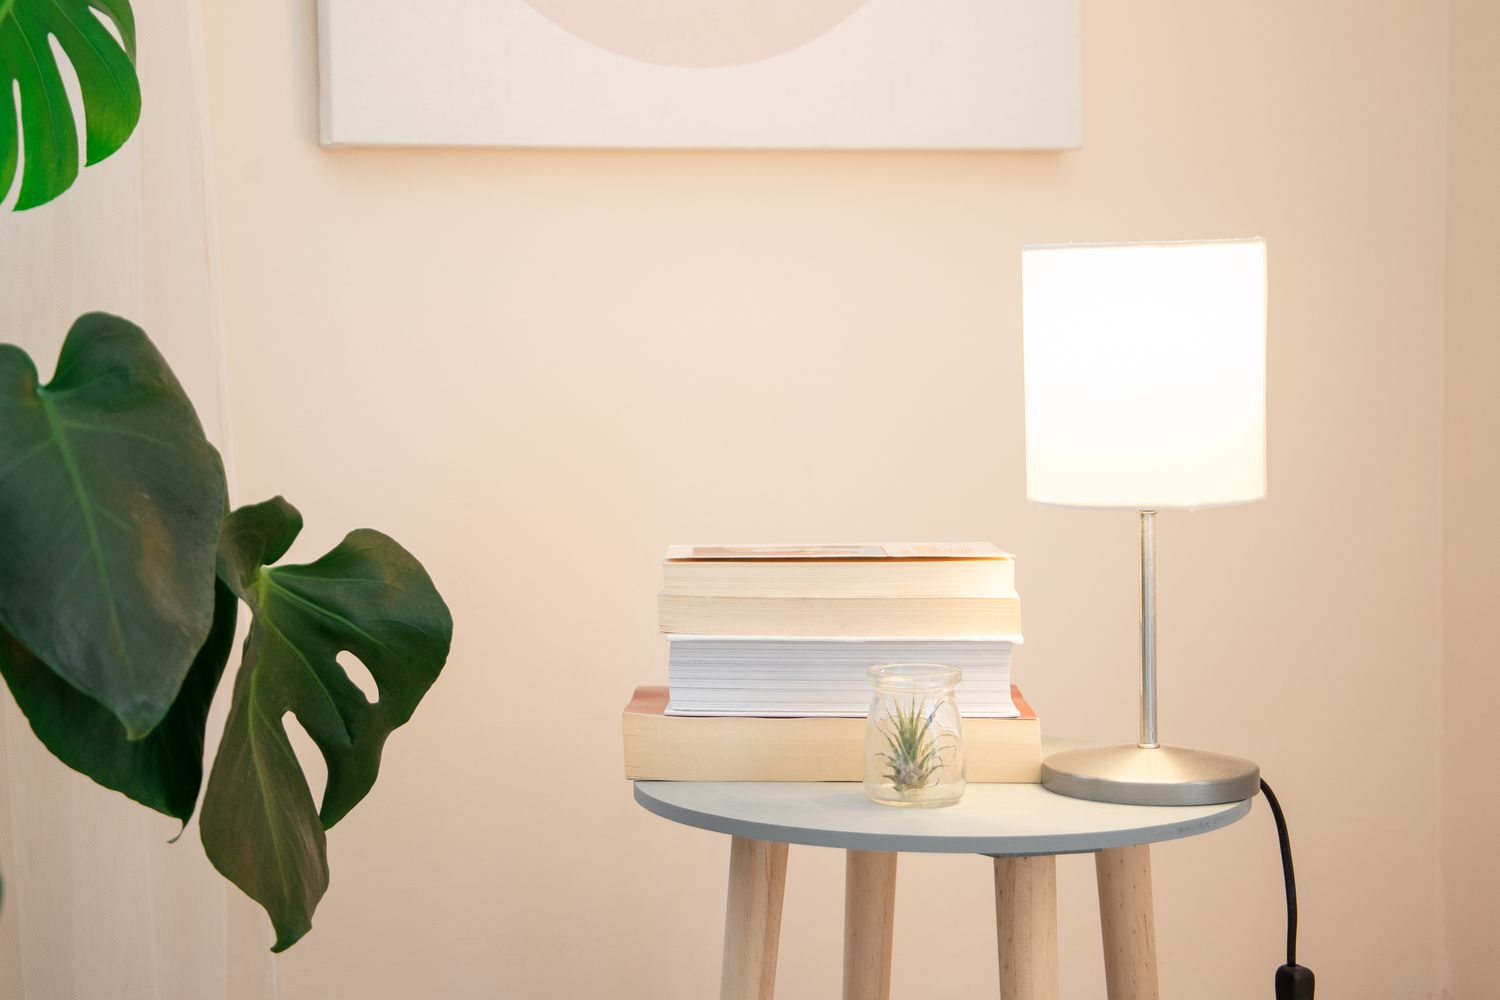 Pequena luminária de mesa emitindo luz ambiente branca ao lado de uma pilha de livros